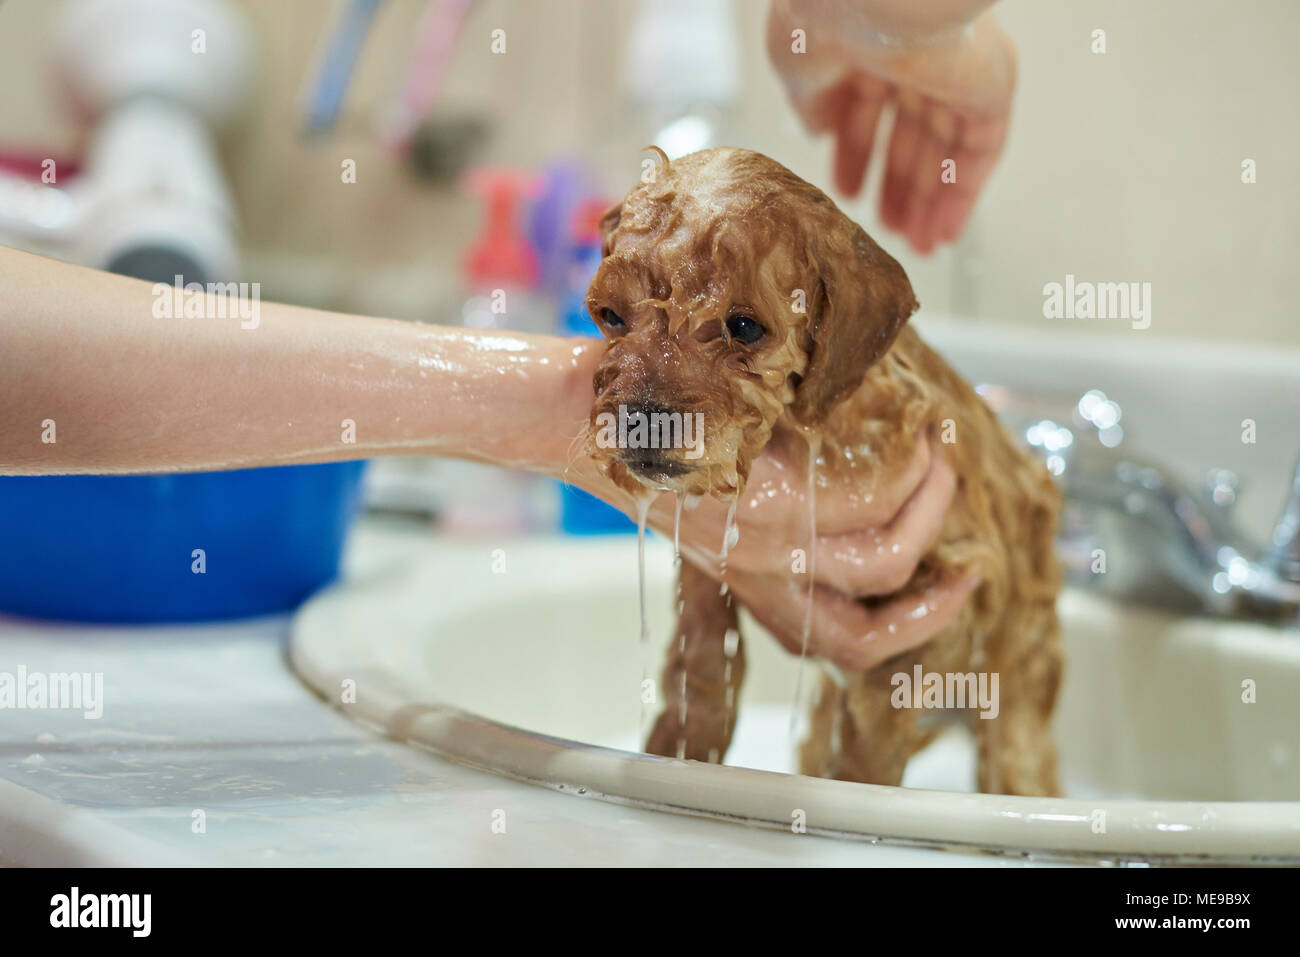 Soaking wet poodle puppy close-up. Washing dog service Stock Photo